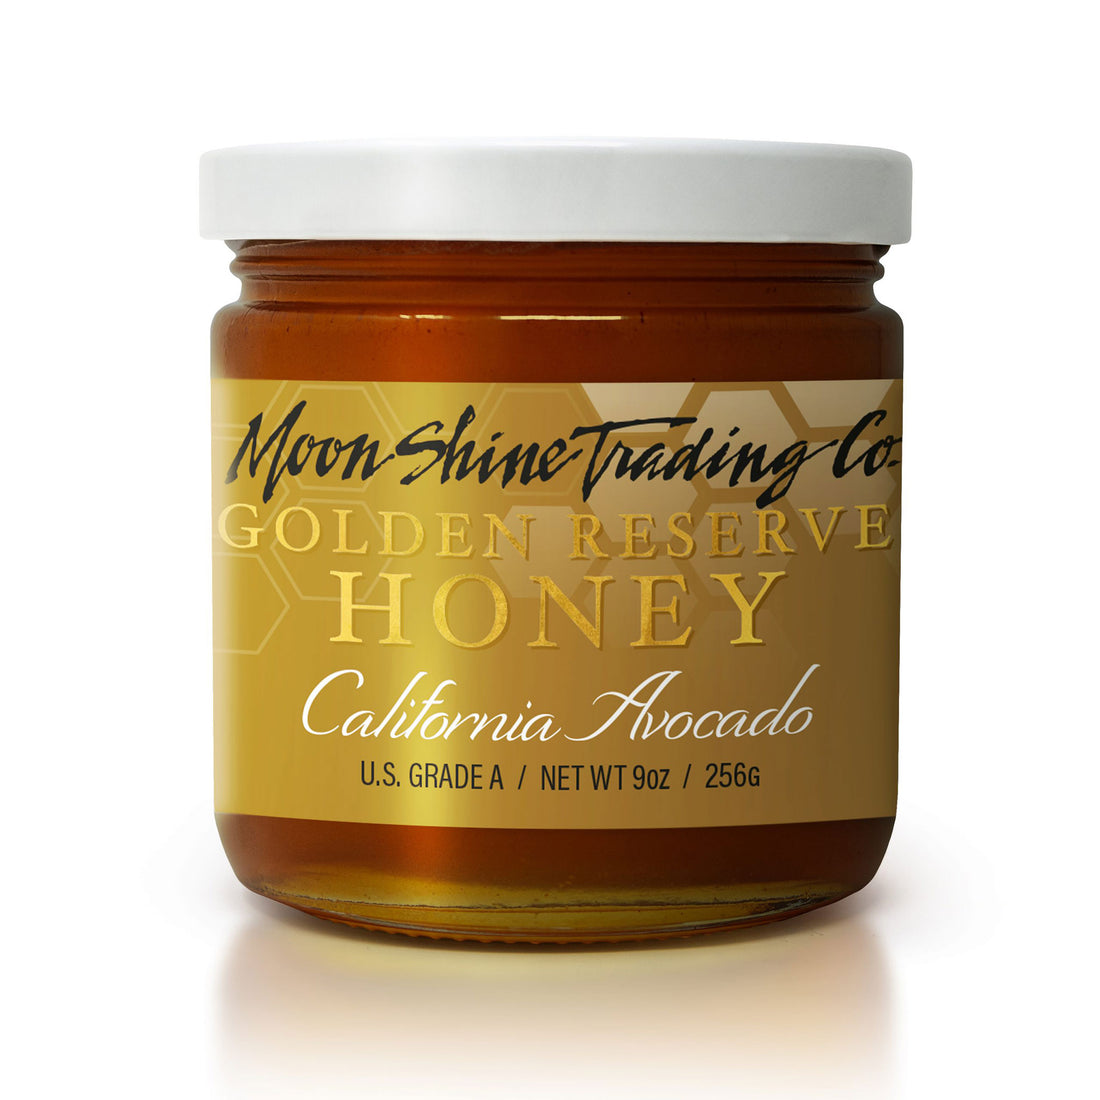 California Avocado Honey